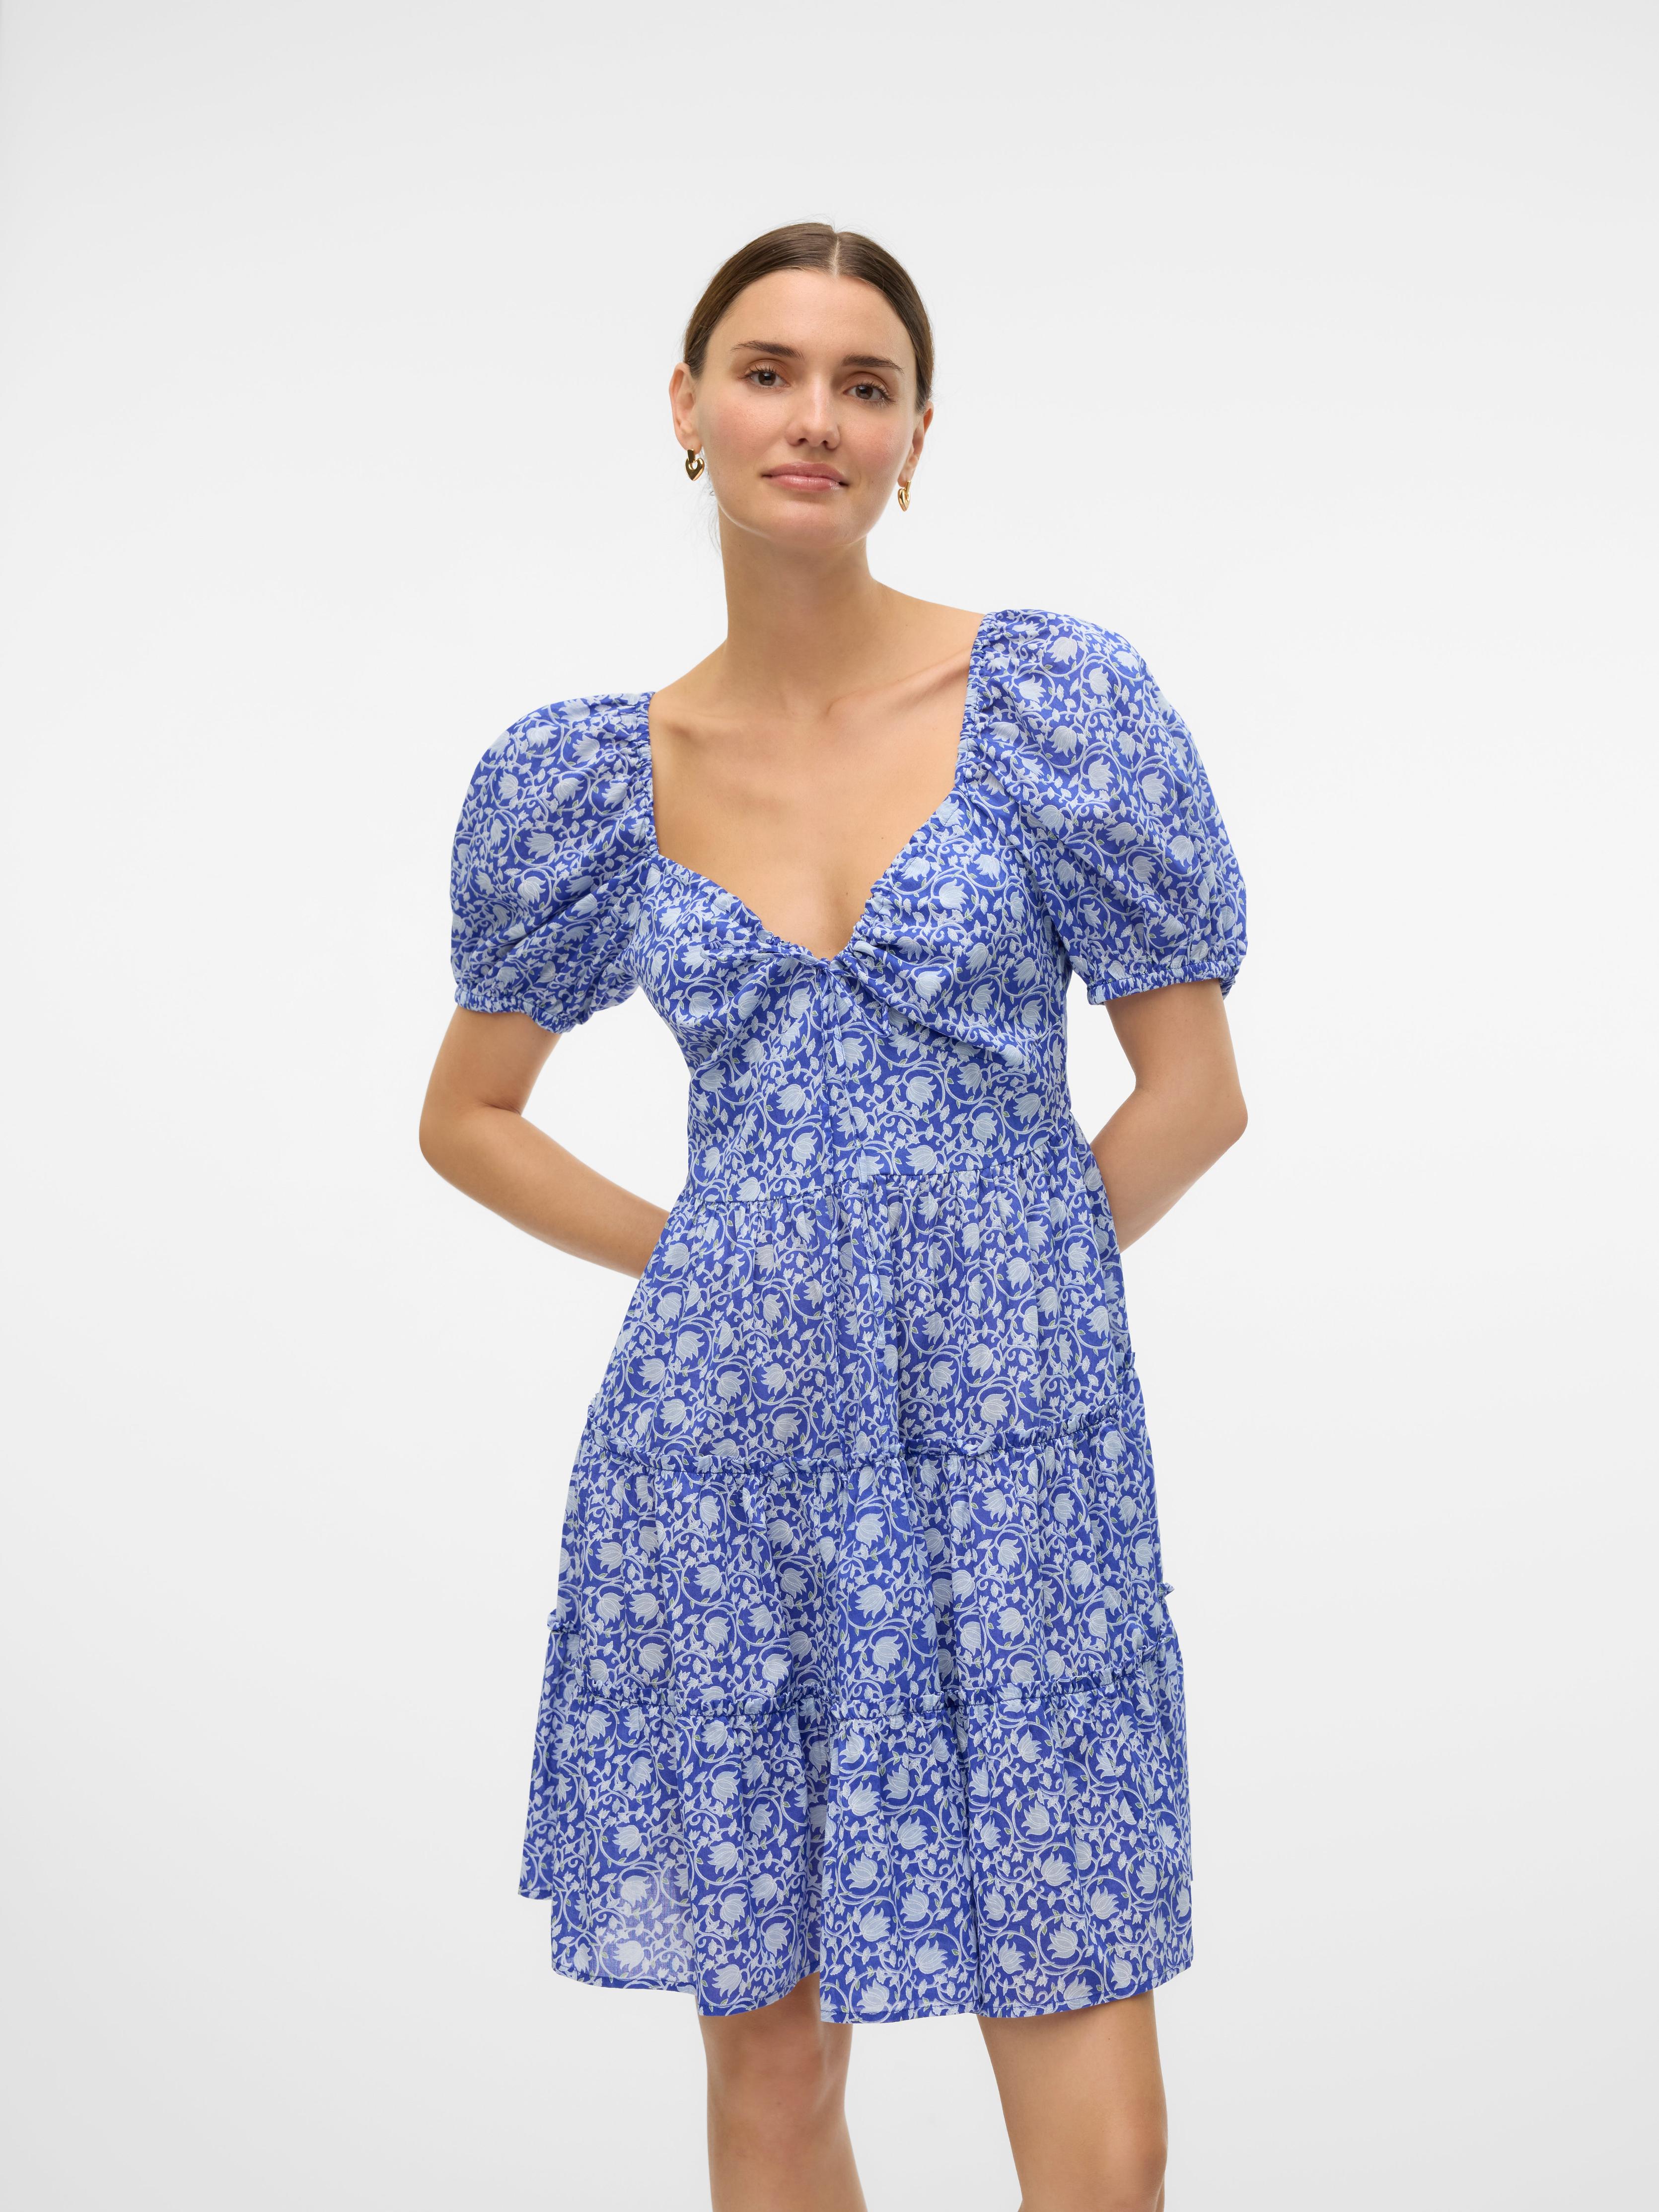 VMLYCA Lyhyt mekko tuote hintaan 49,99€ liikkeestä Vero Moda